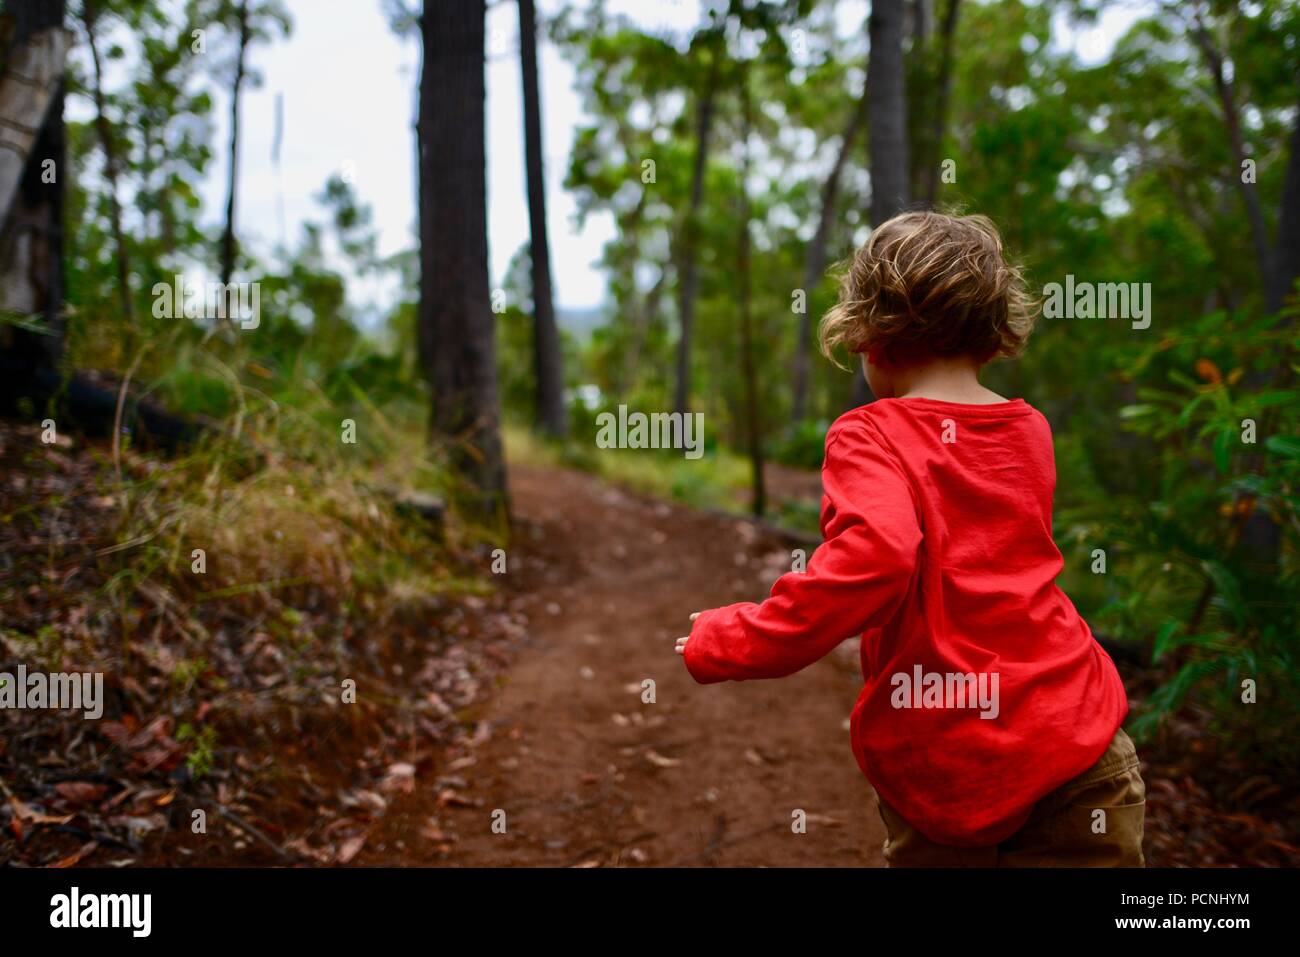 Un jeune enfant s'exécute à travers une forêt, Cardwell, Queensland, Australie Banque D'Images